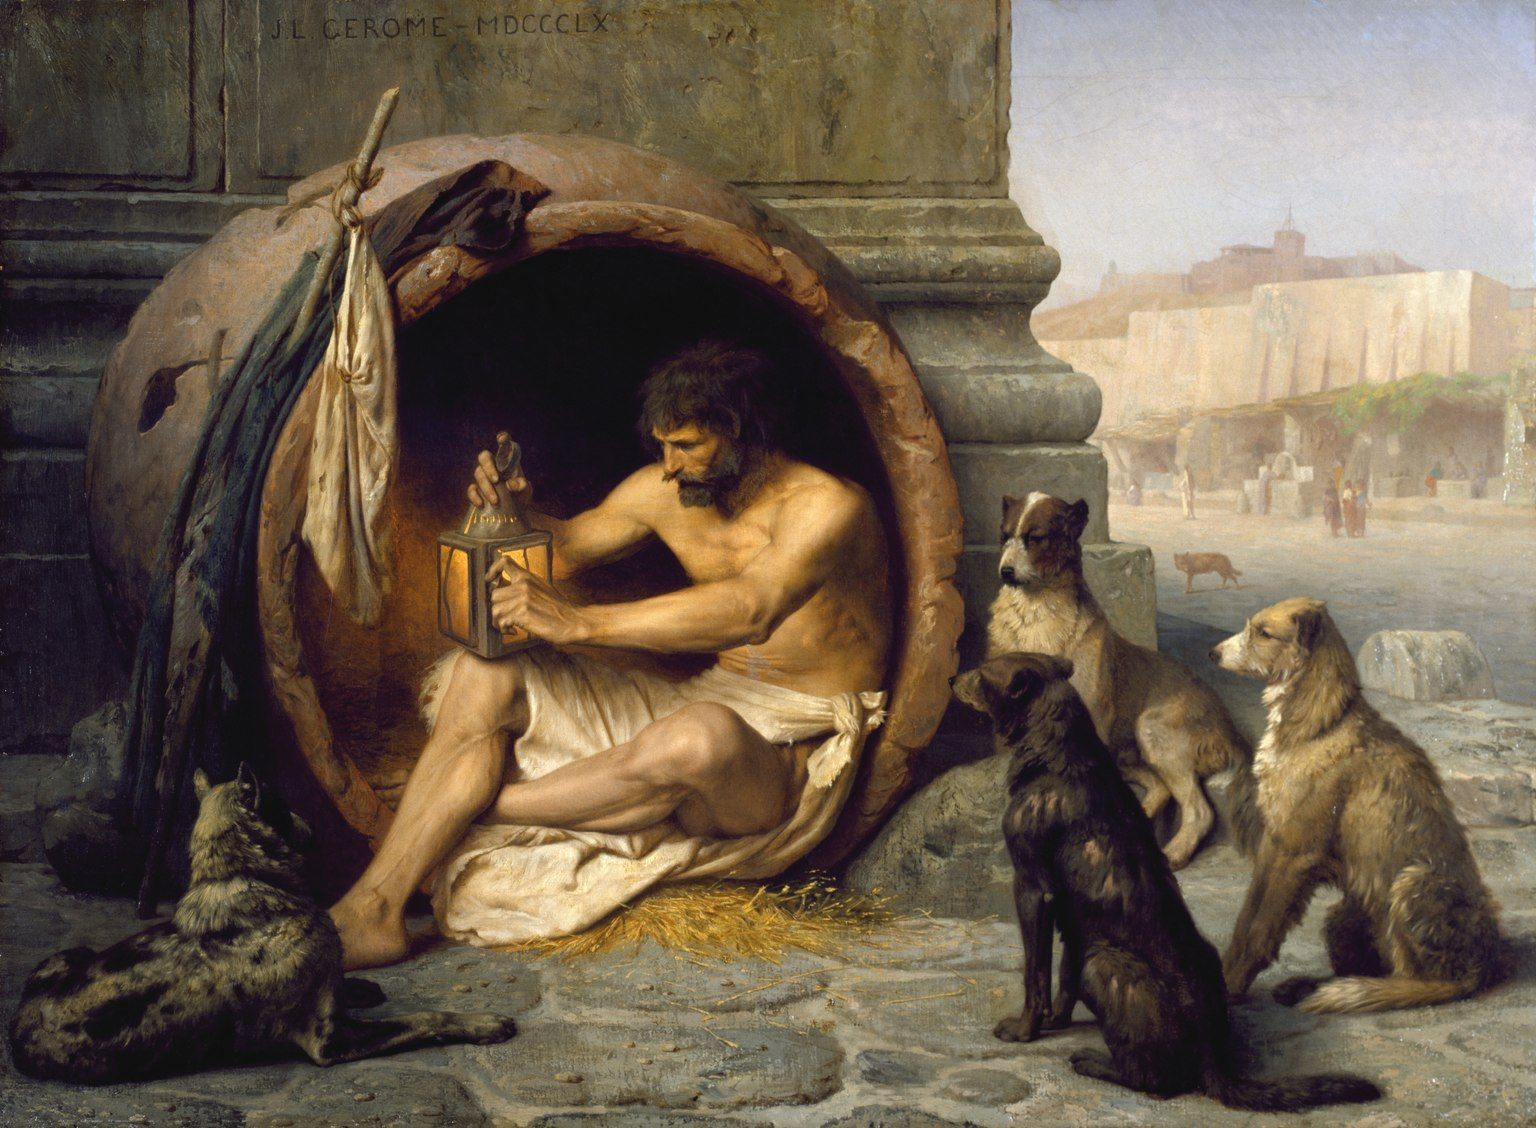 Diógenes: El filósofo más extraño de la antigua Grecia